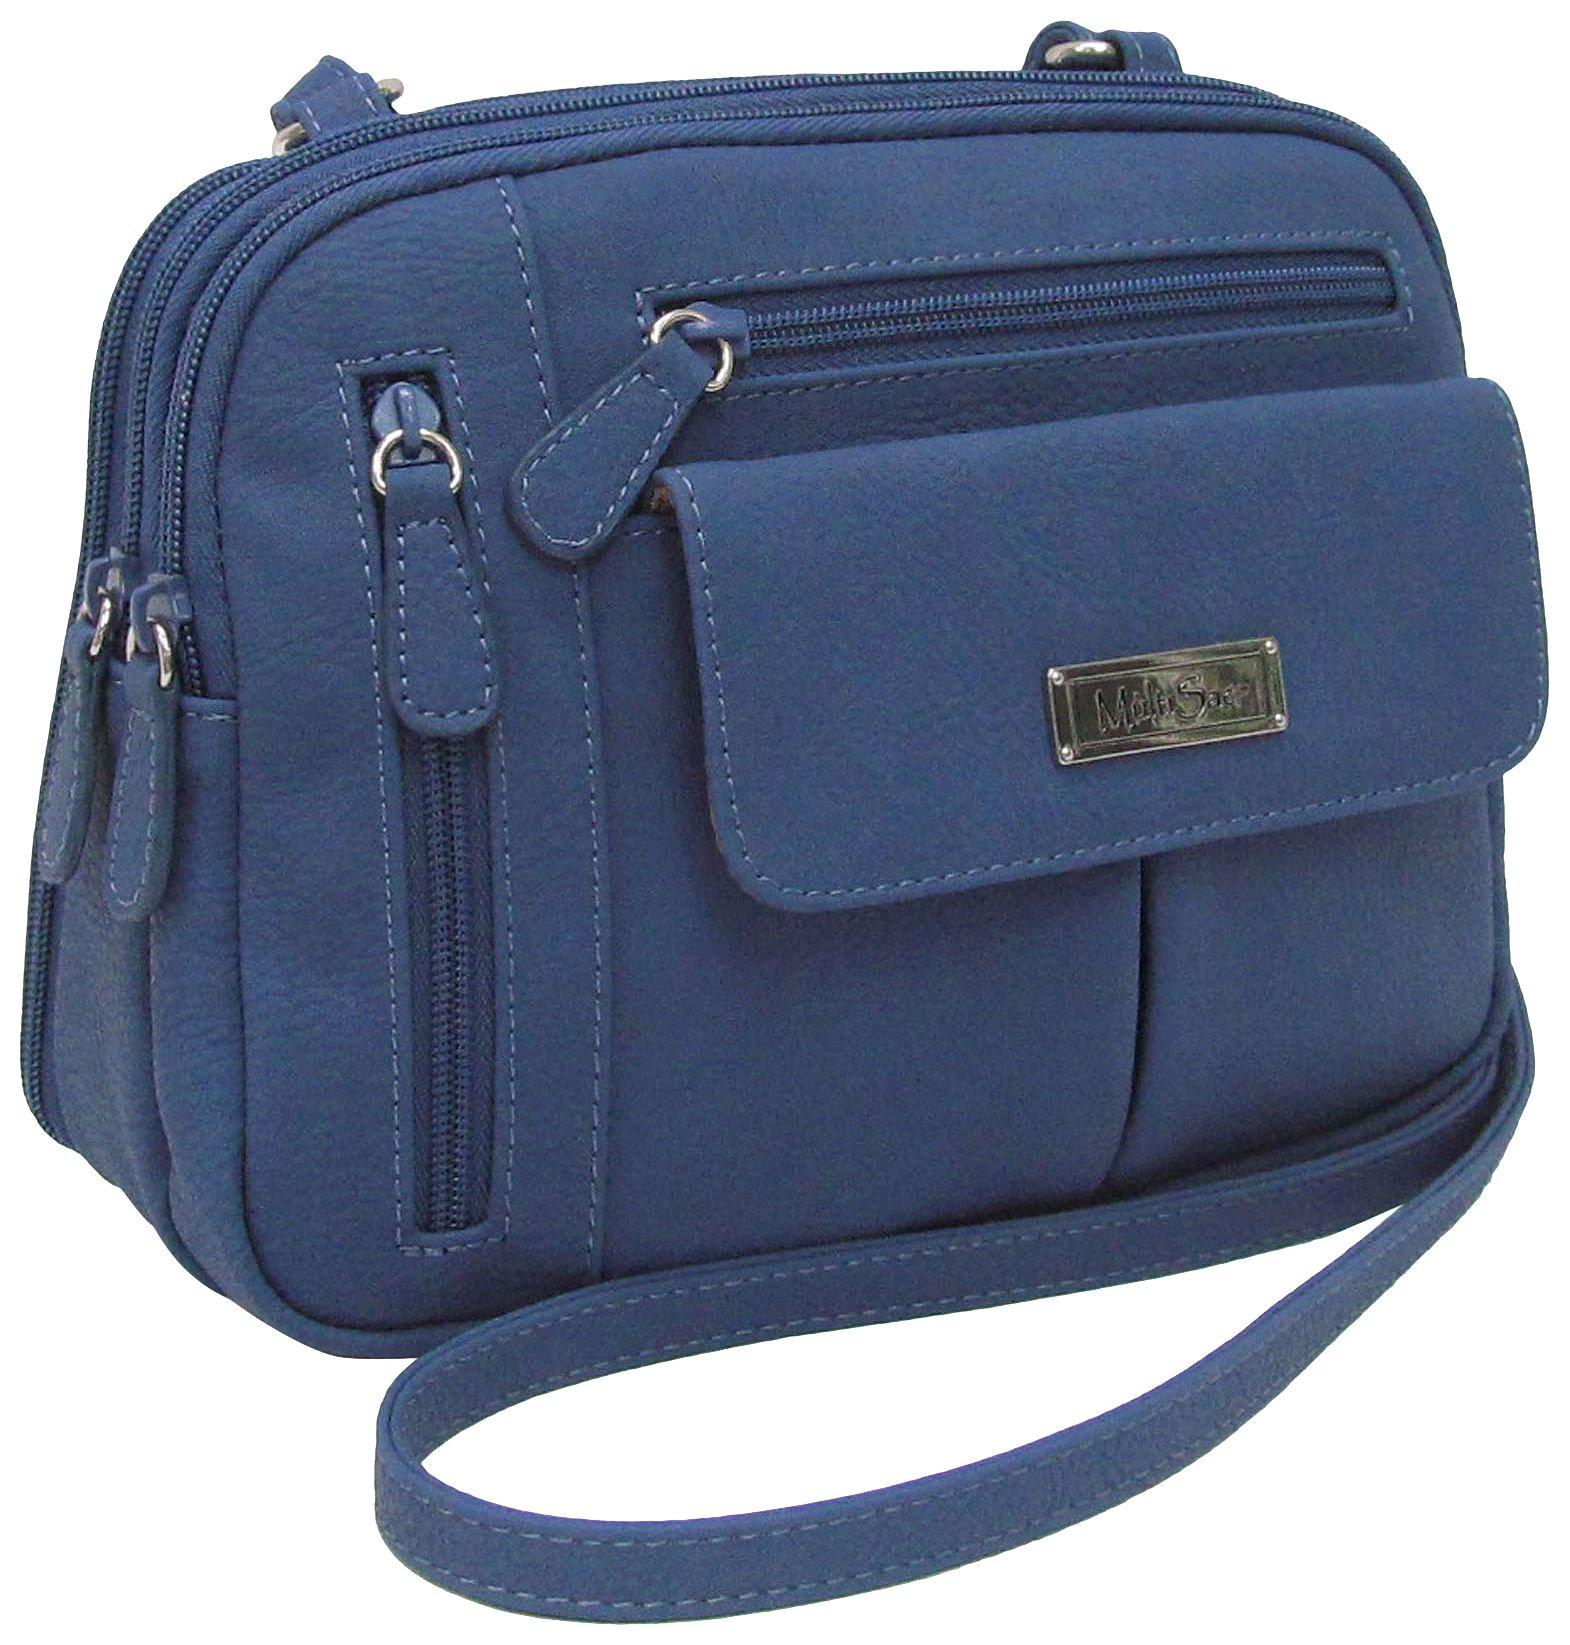 MultiSac Zippy Solid Color Crossbody Handbag